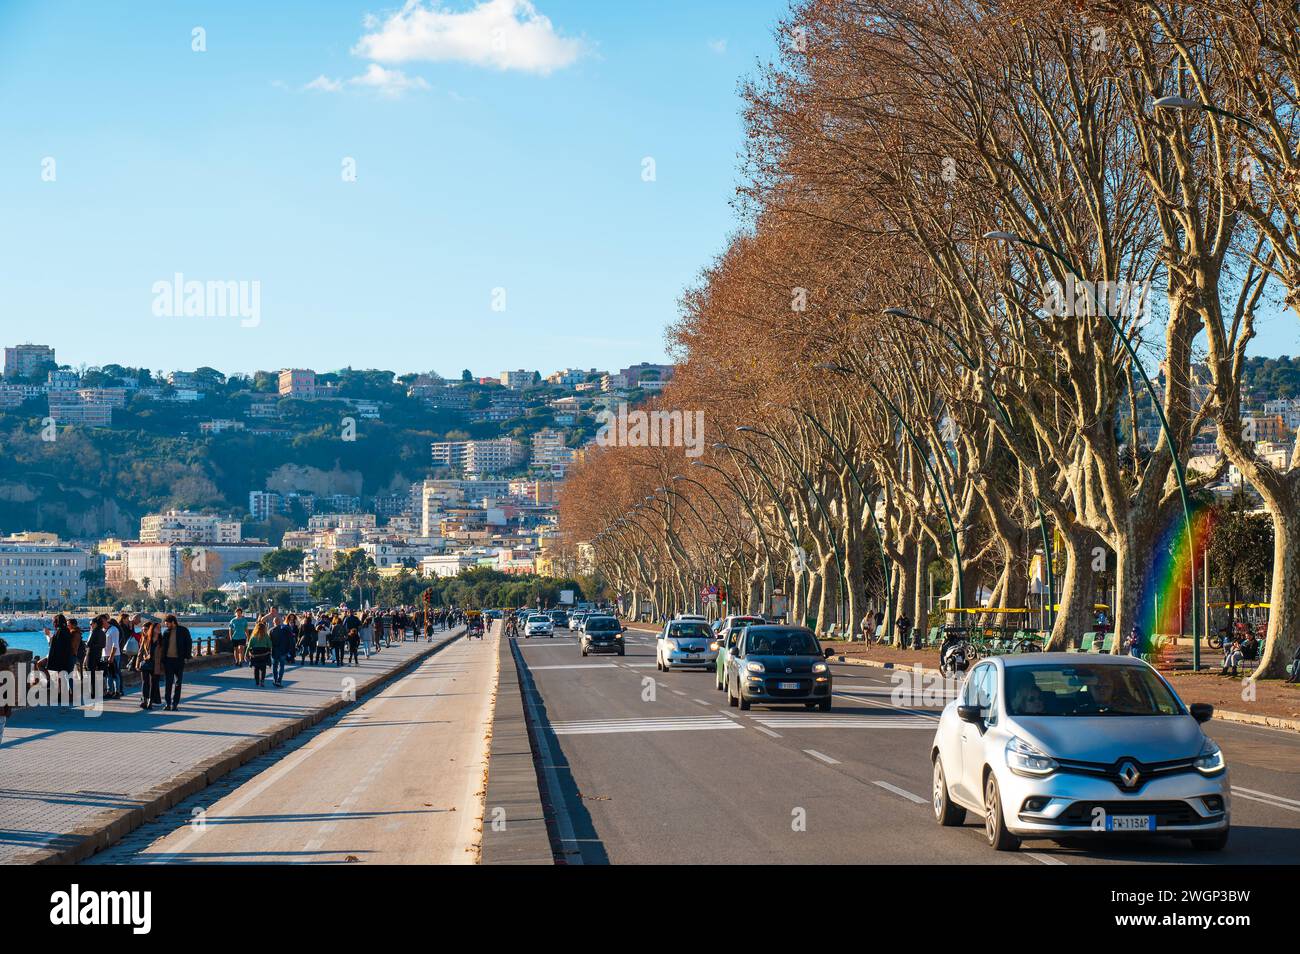 Neapel, Italien - 18. Dezember 2022: Eine belebte Straße in Neapel, Italien, voller lebendiger Menschen und Autos, die entlang des malerischen Caracciolo fahren Stockfoto